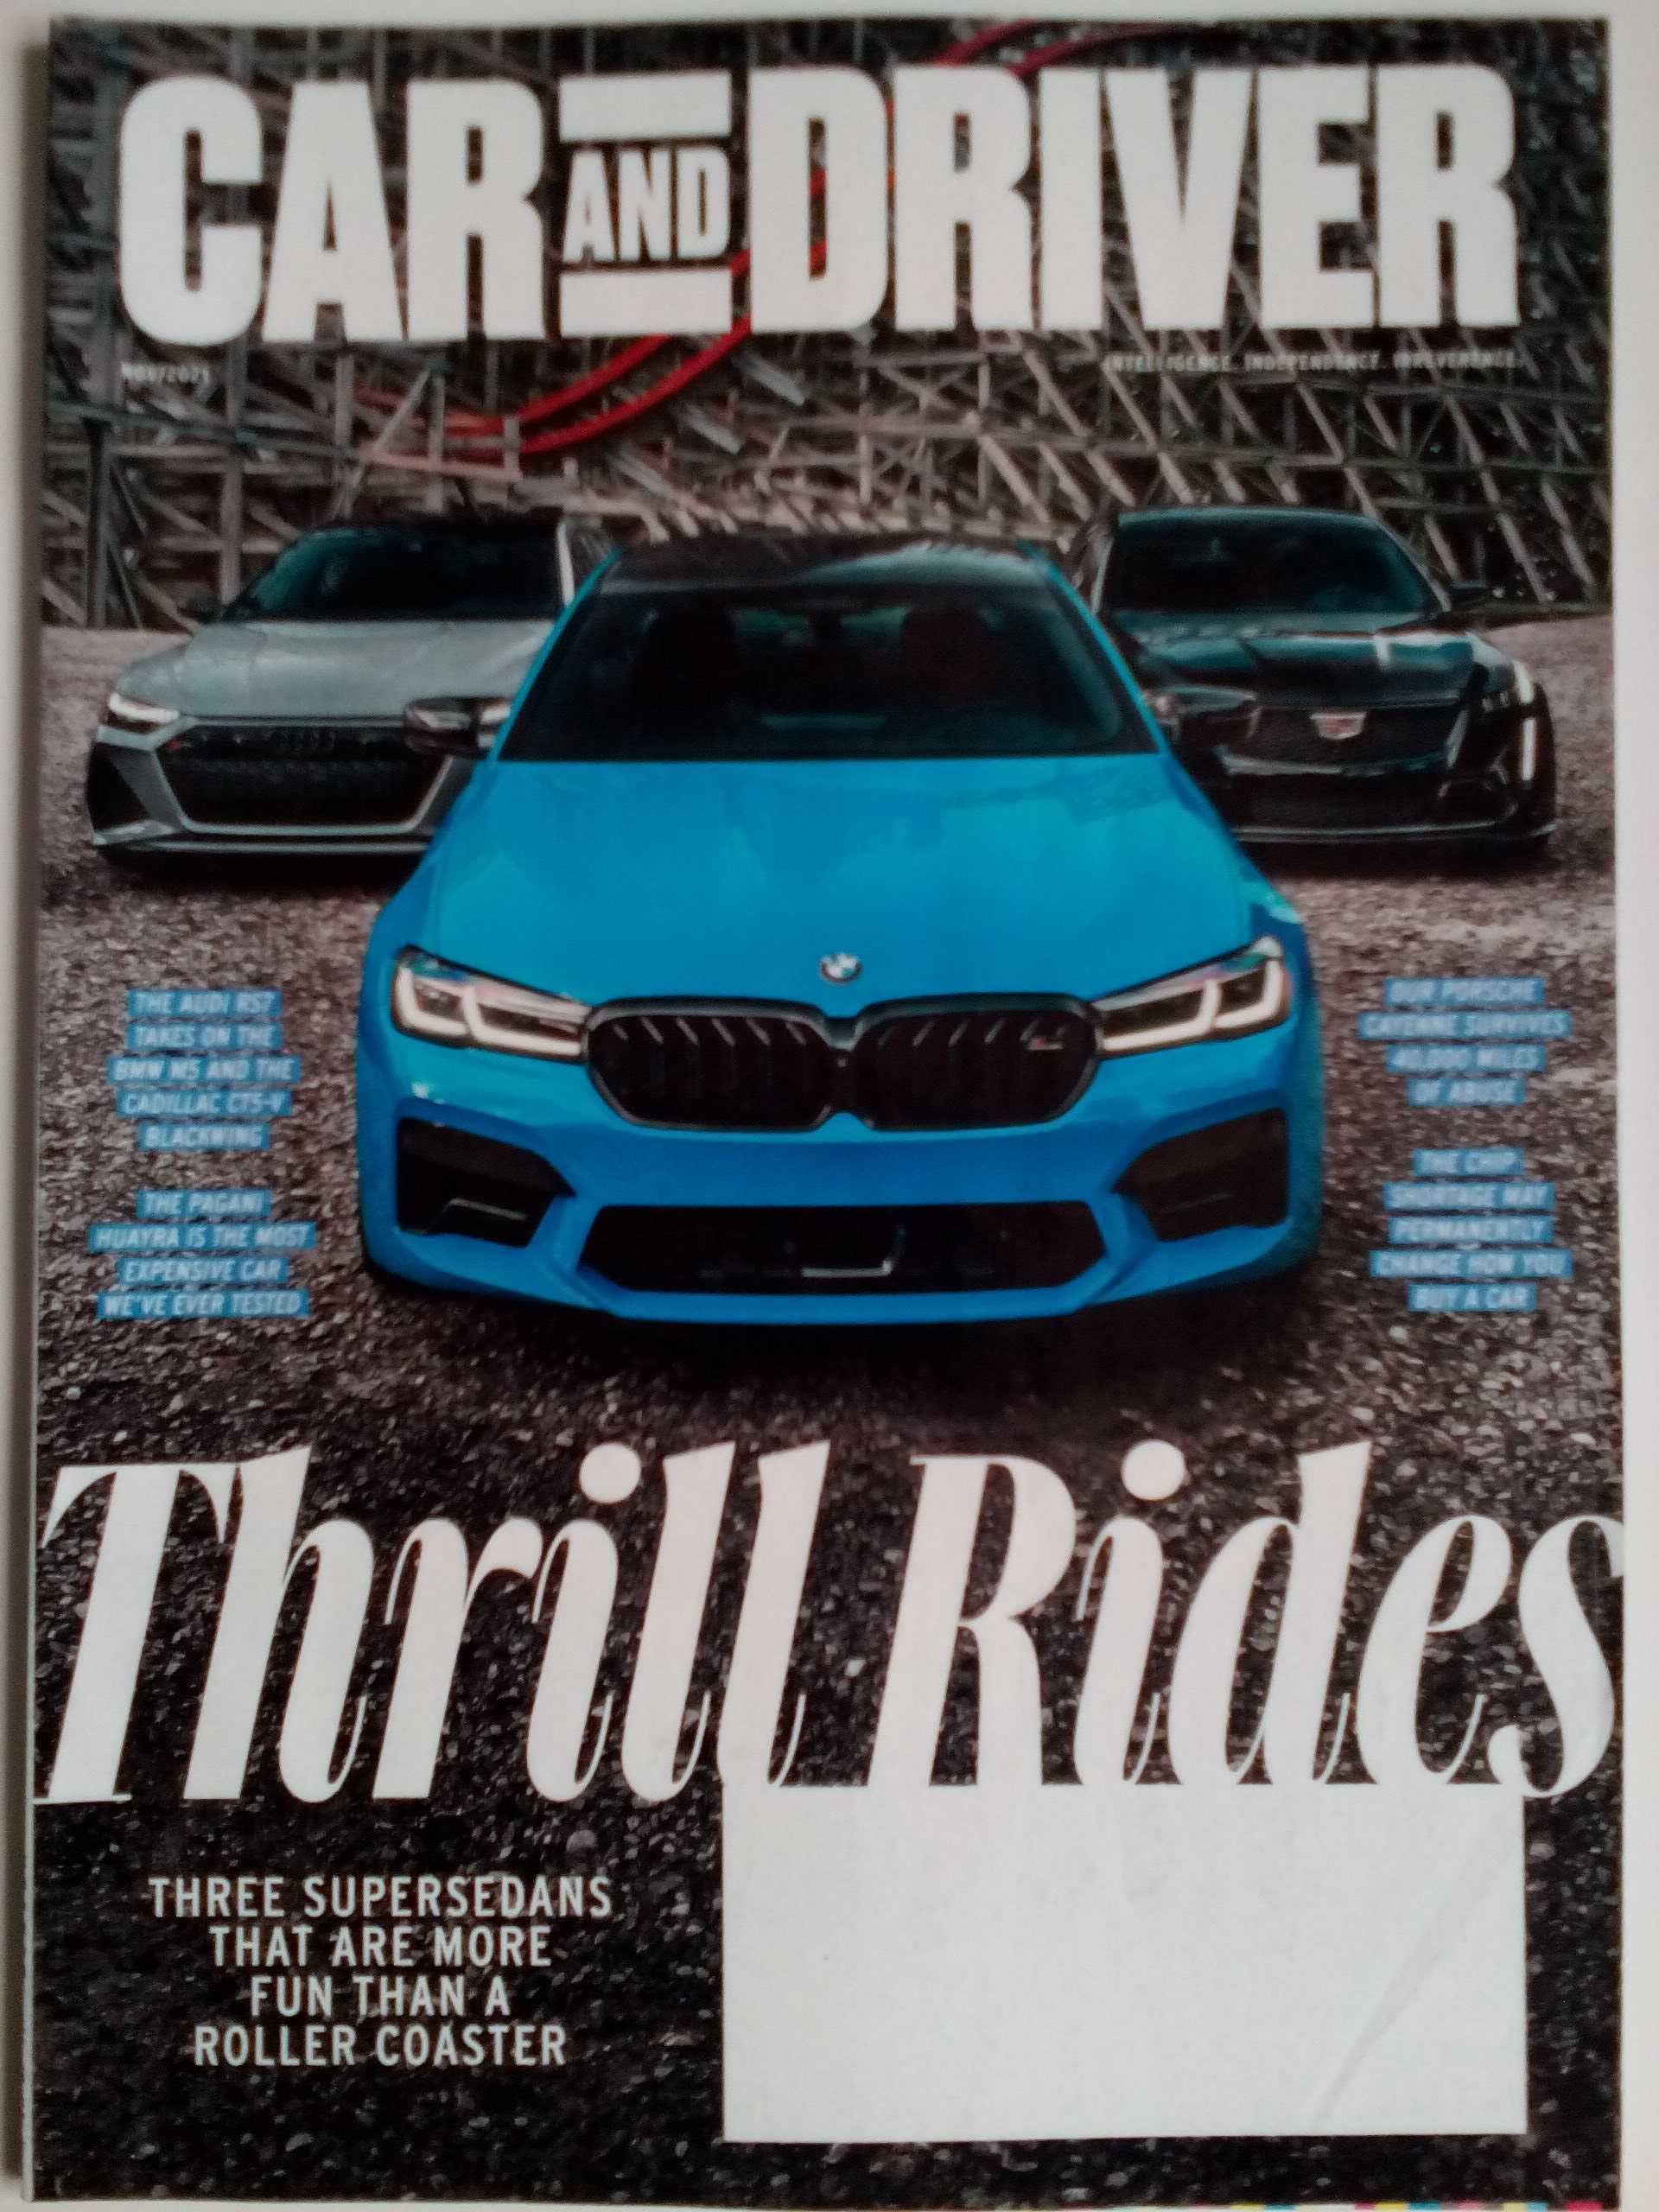 Колекция списания за автомобили Car & Driver Motor Trend Road & Track